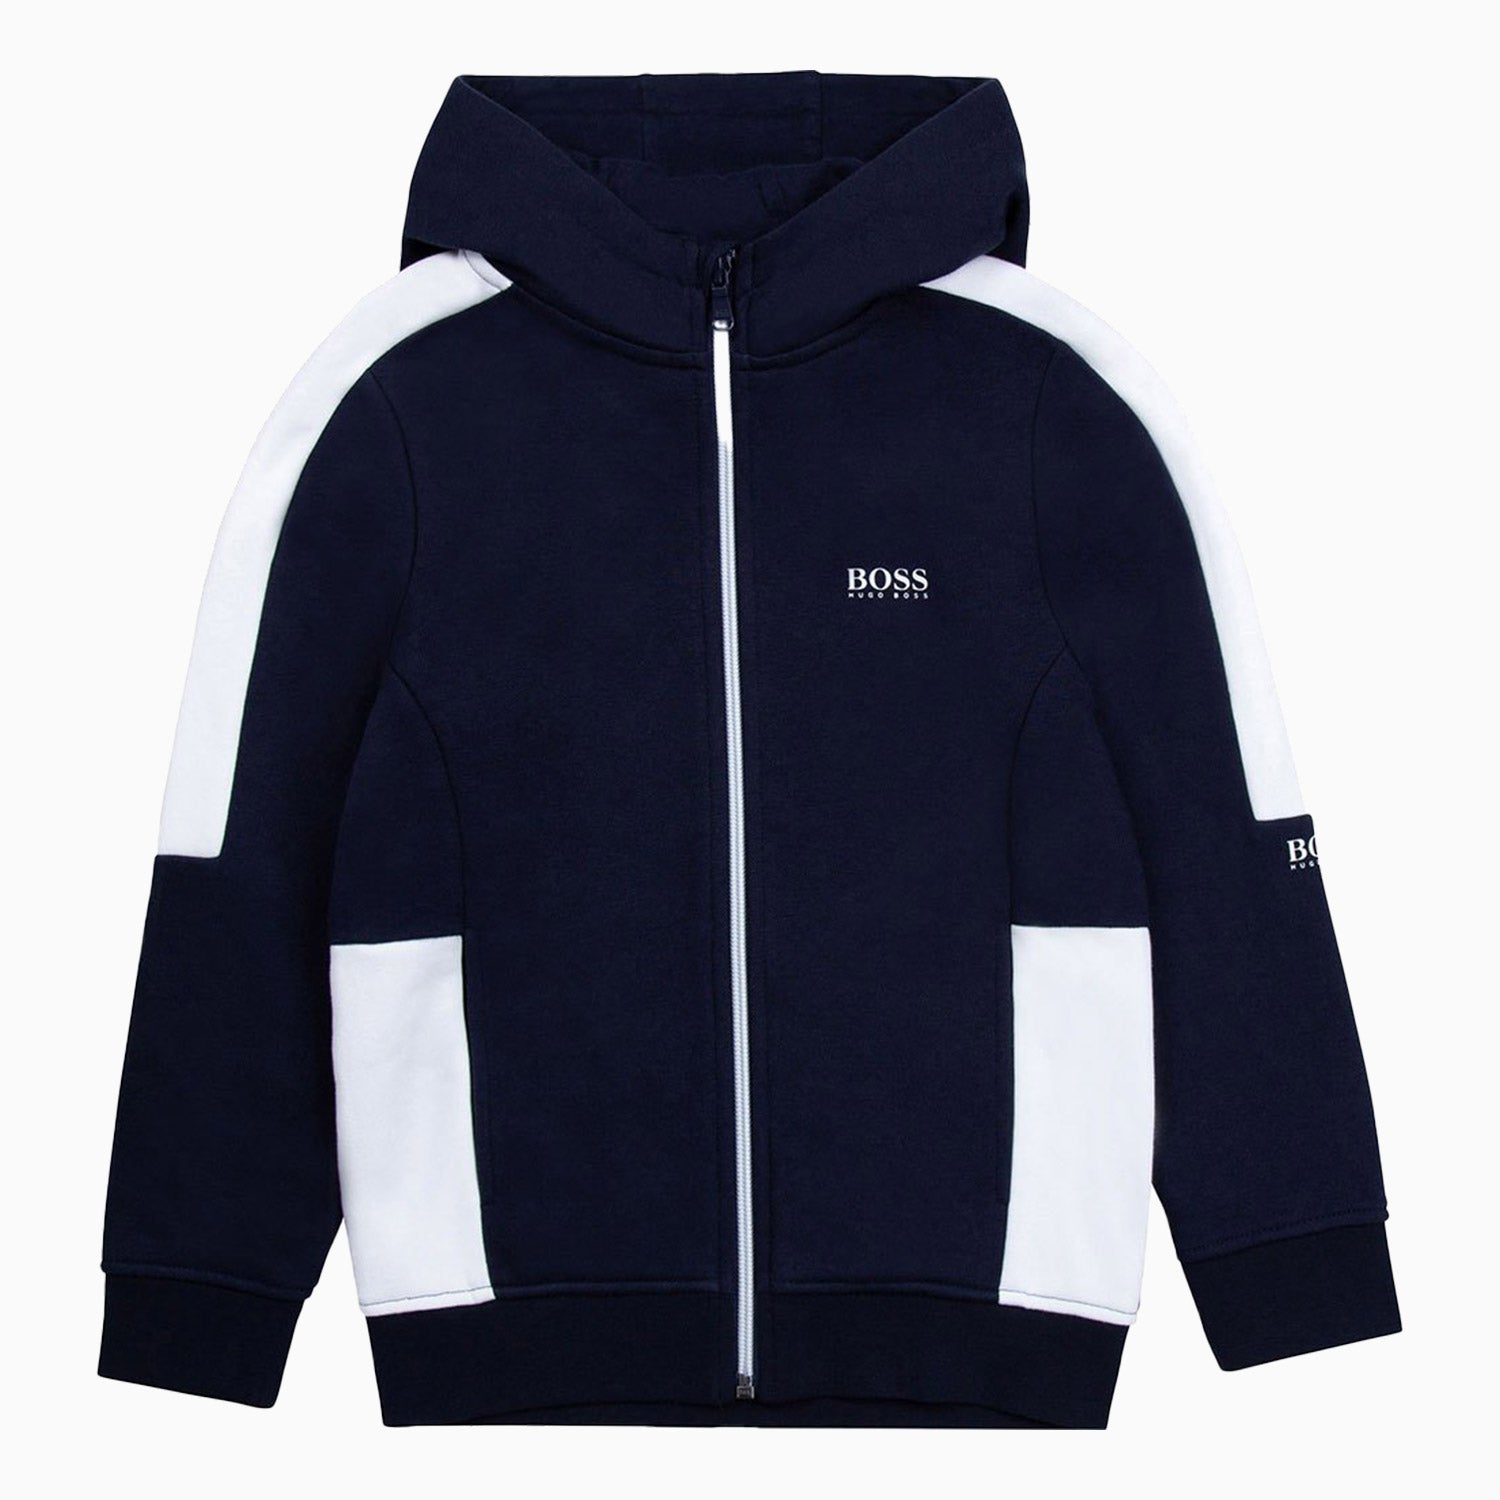 Hugo Boss Kid's Zipper Hoodie - Color: Navy Blue - Kids Premium Clothing -